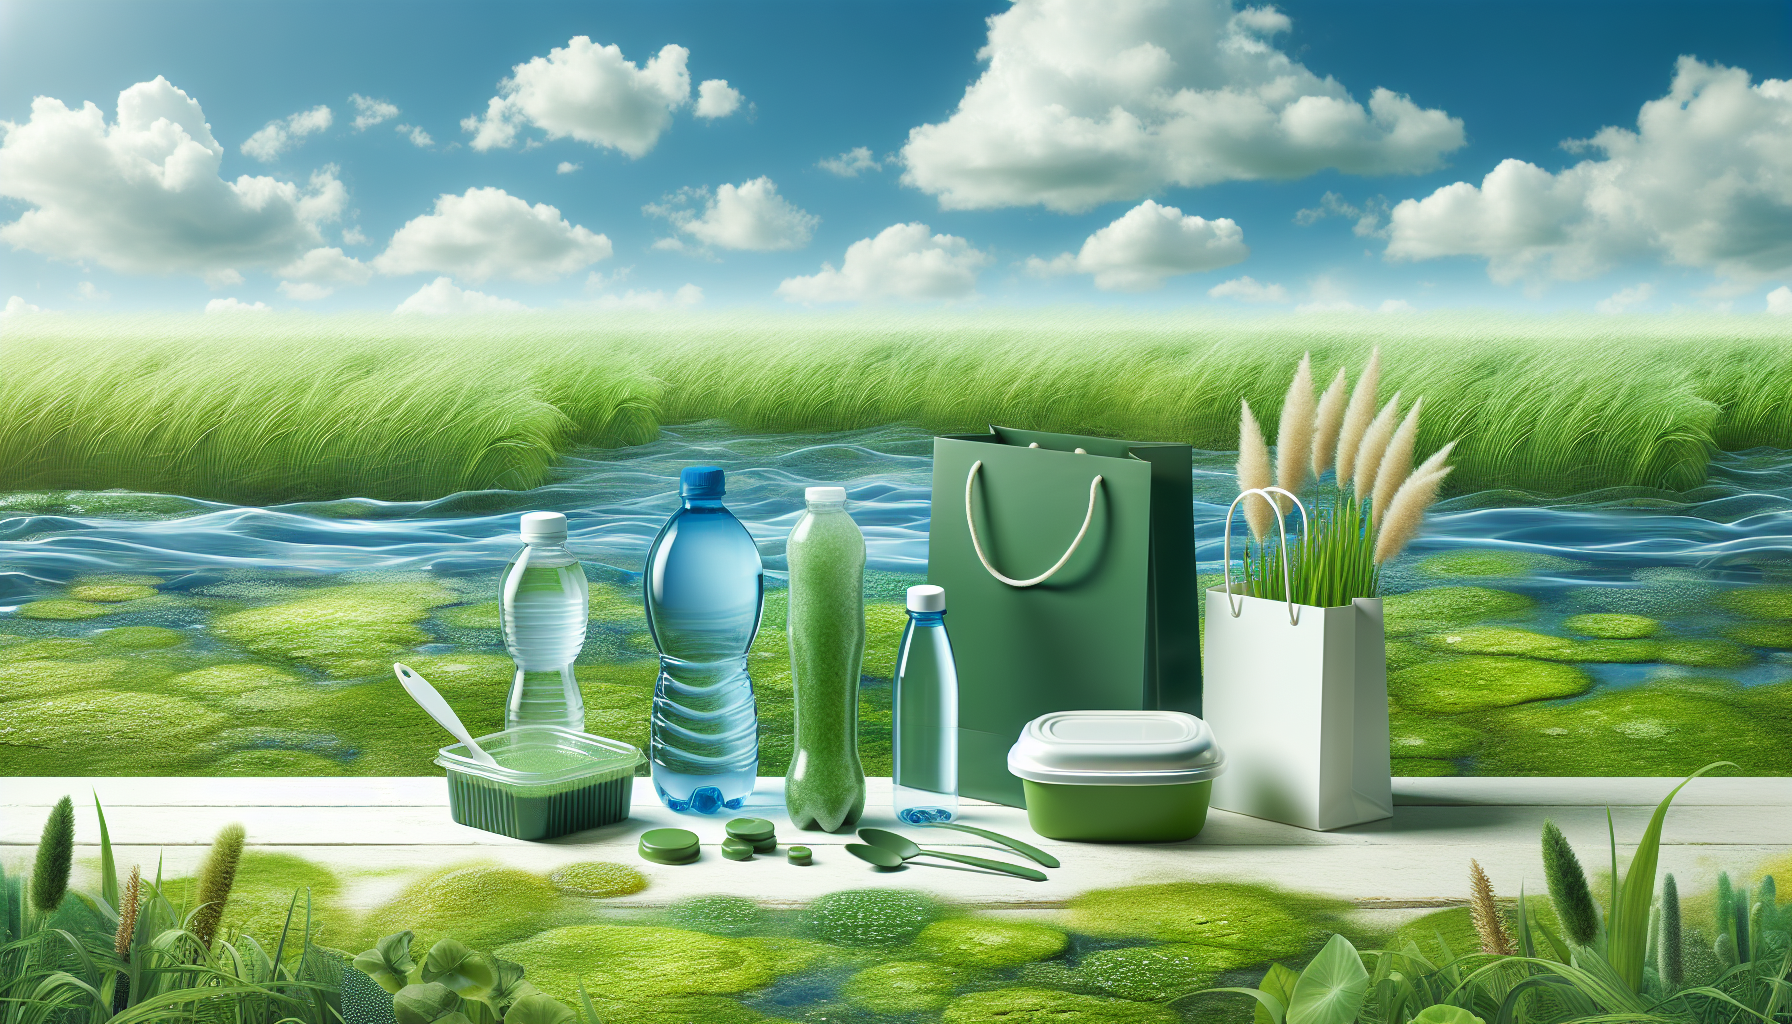 Algae-based bioplastics in consumer products